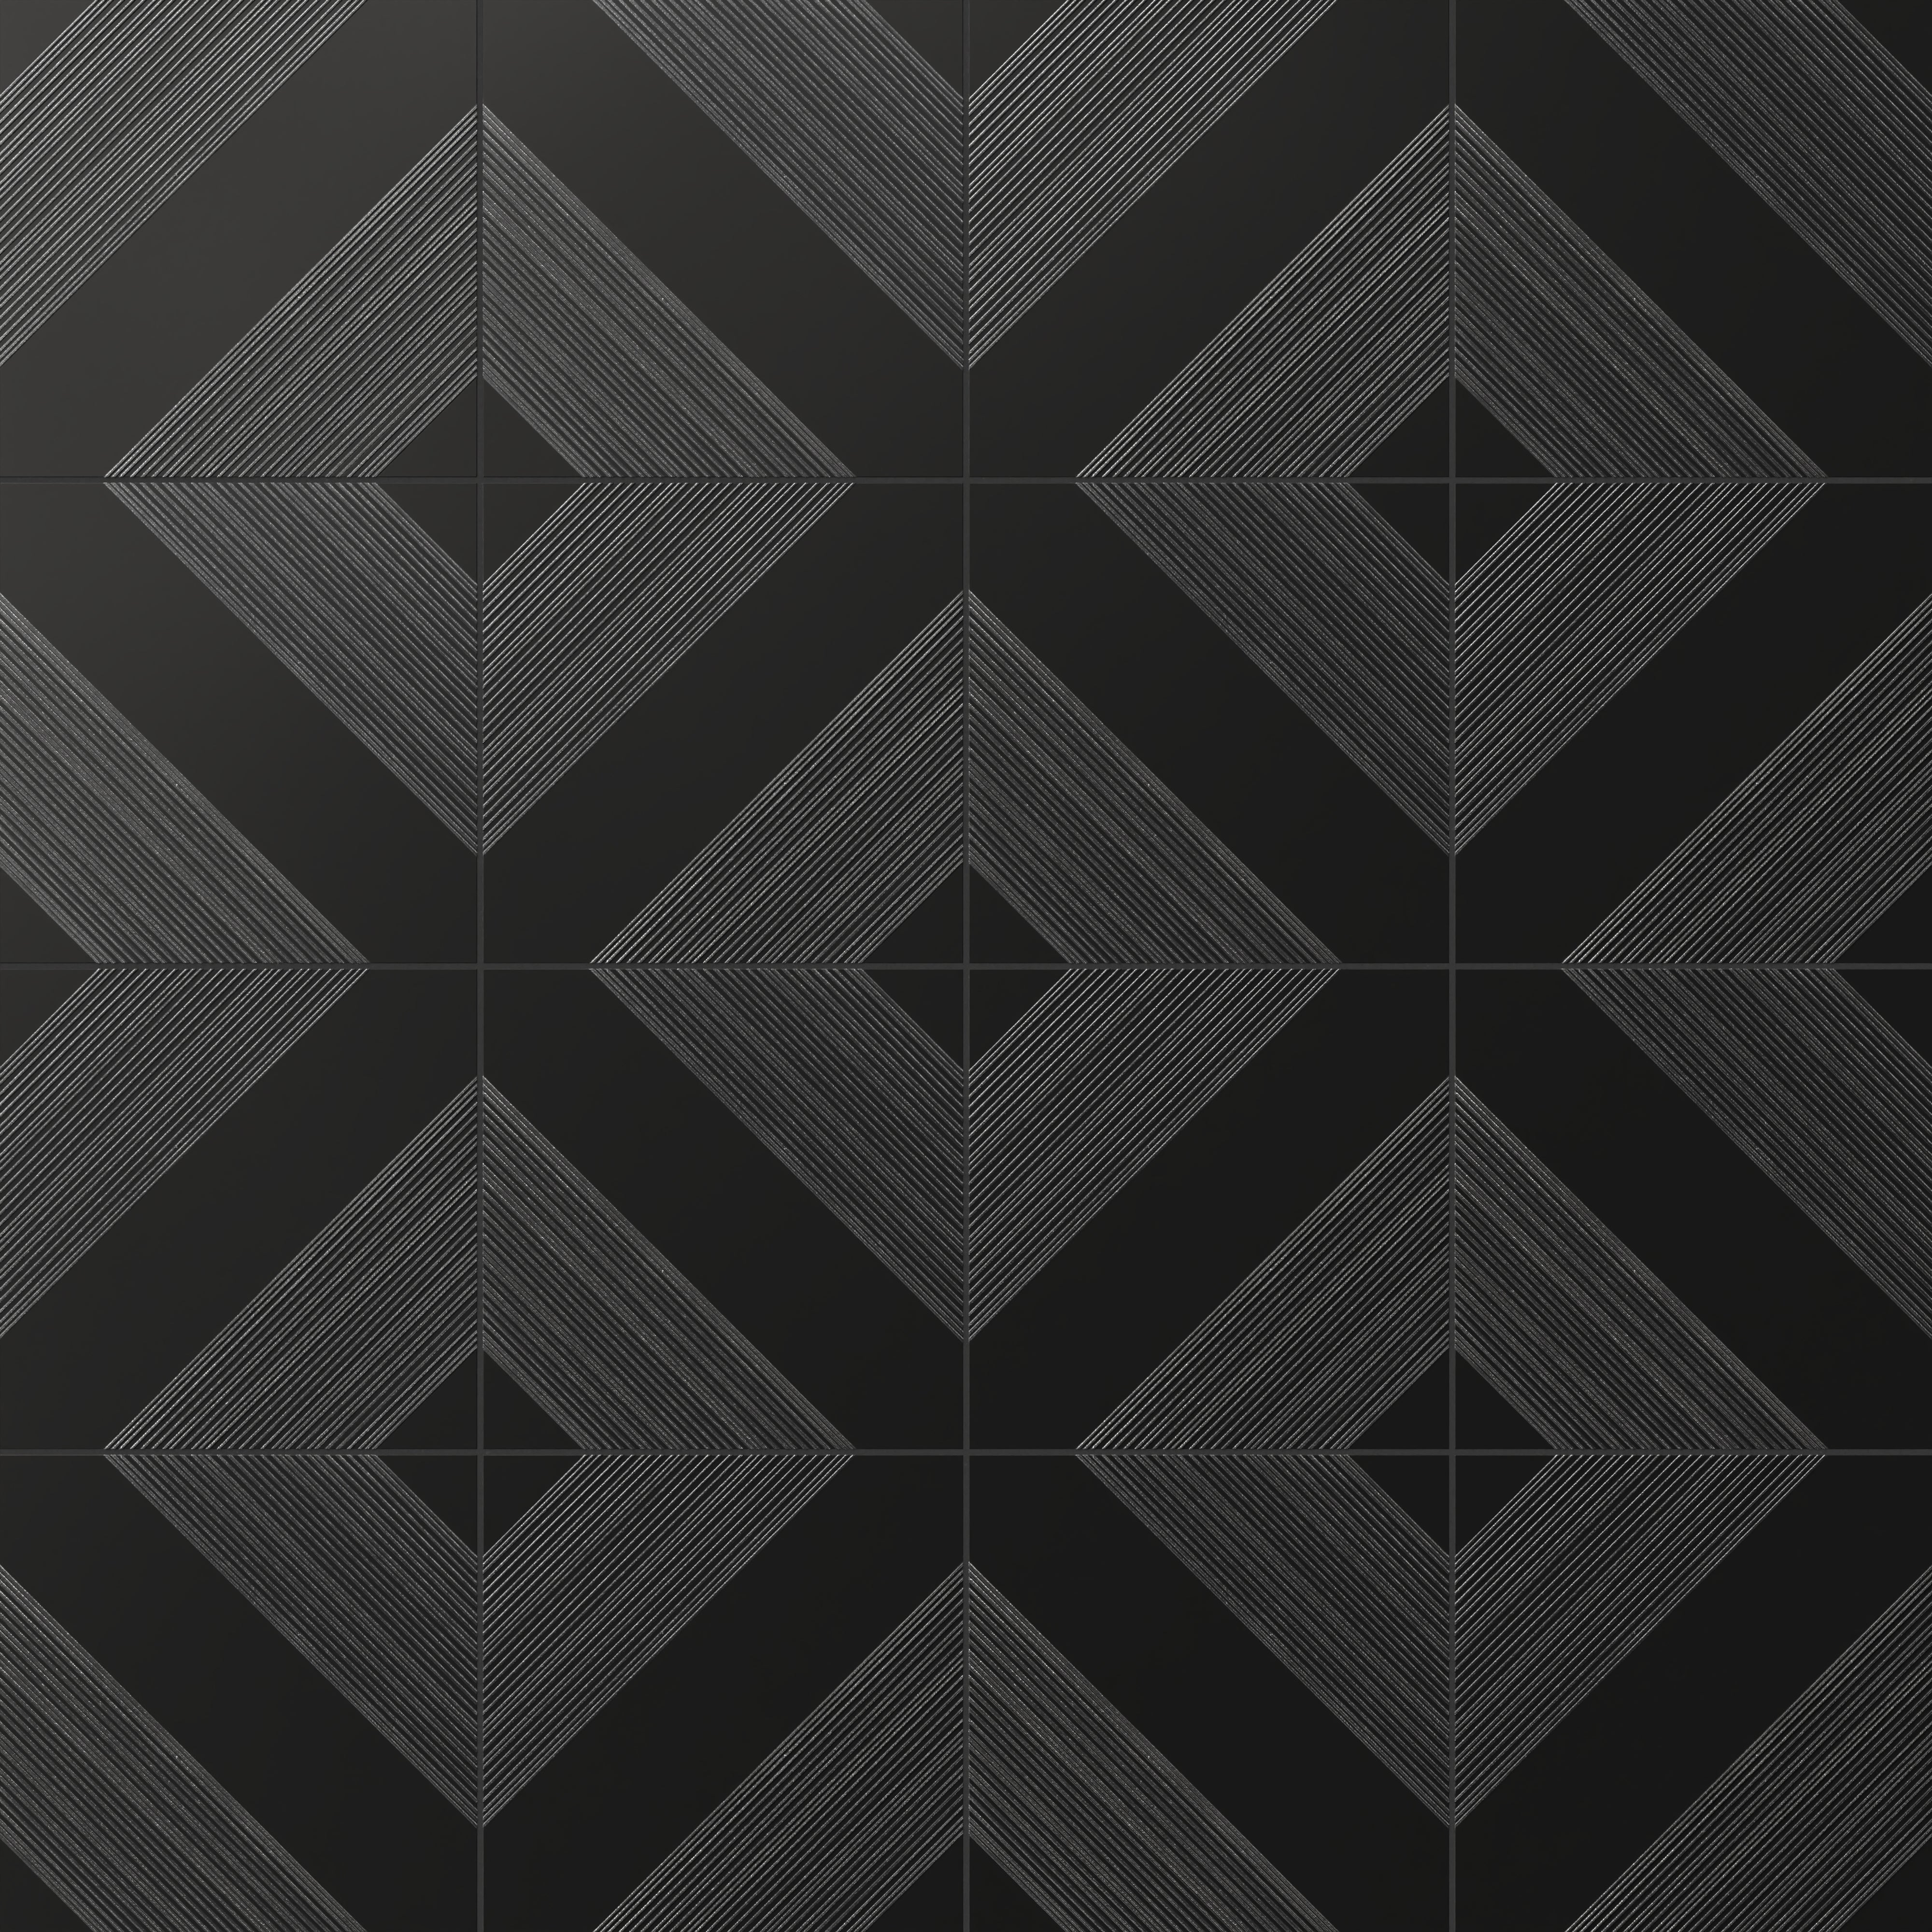 Estelle 12x12 Satin Ceramic Tile in Deco 1 Black Silver